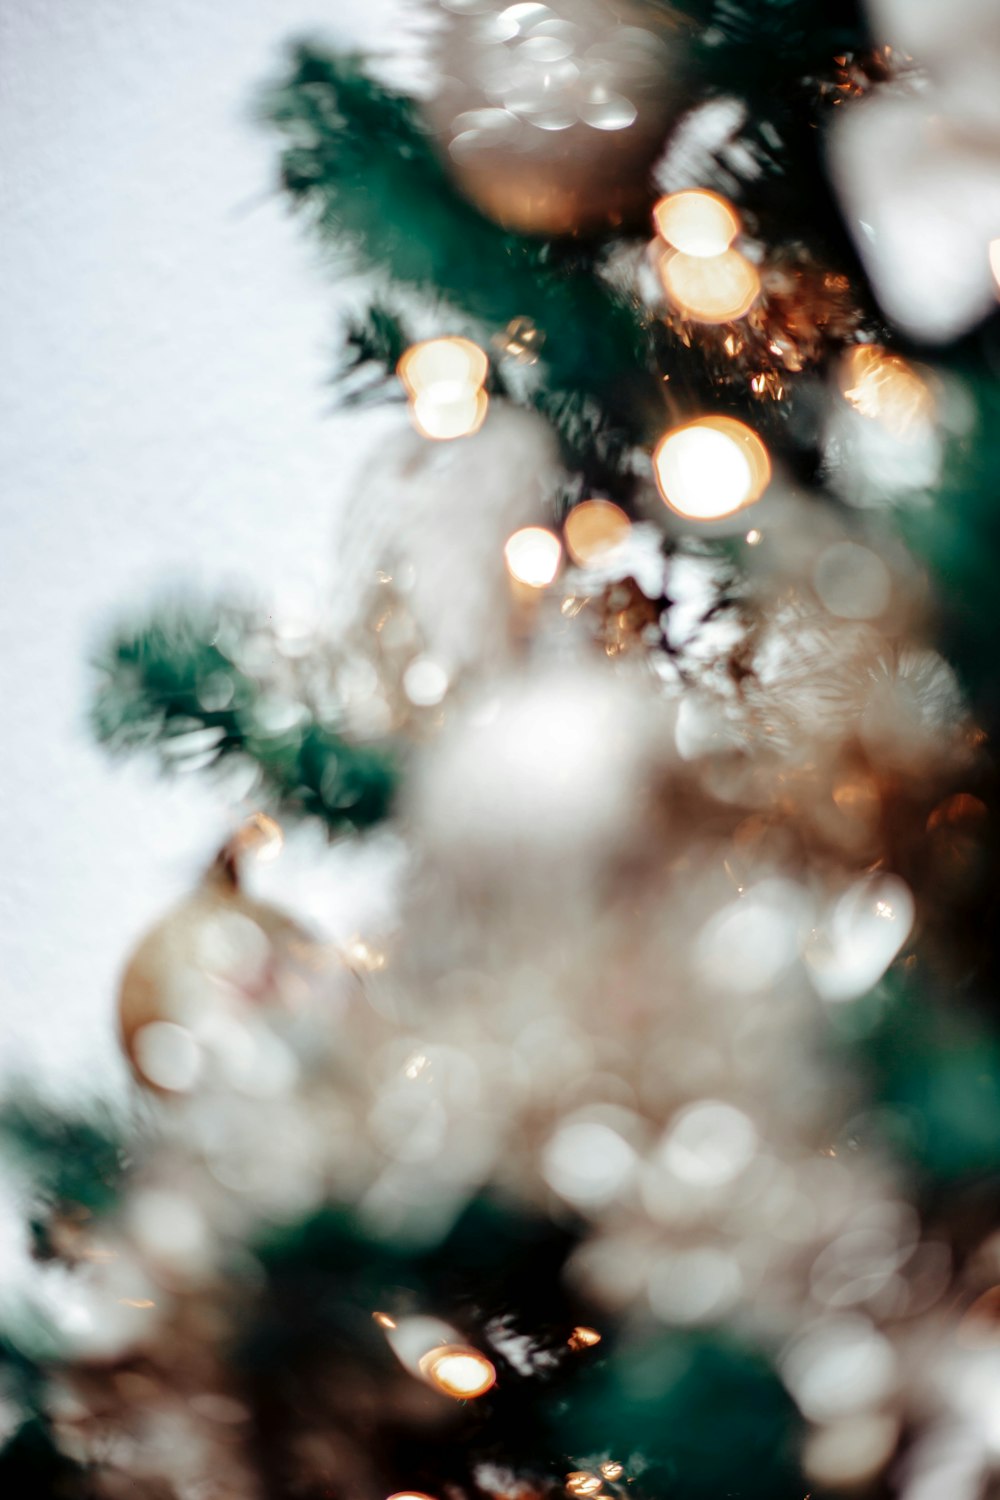 Ảnh gần của cây thông Giáng sinh với đèn trang trí: Cùng chiêm ngưỡng những hình ảnh gần của cây thông Giáng sinh với đèn trang trí đầy màu sắc và lung linh. Mỗi chi tiết trang trí đều được chăm chút tỉ mỉ để tạo nên một không gian Giáng sinh tràn ngập cảm xúc và ý nghĩa.